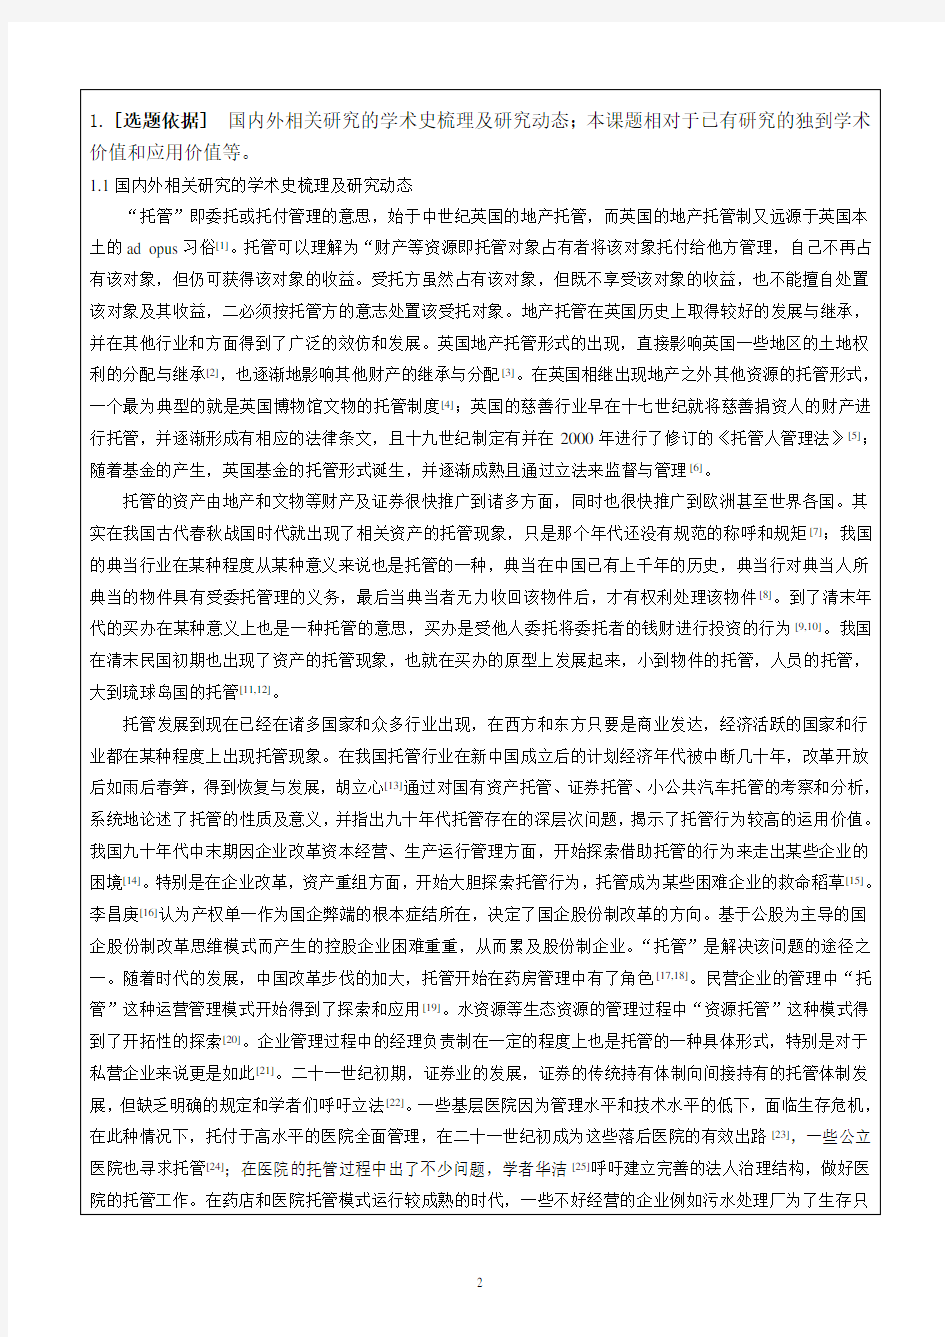 2016年邓绍云全国教育科学规划课题申请书(教育部重点项目)-活页修改版